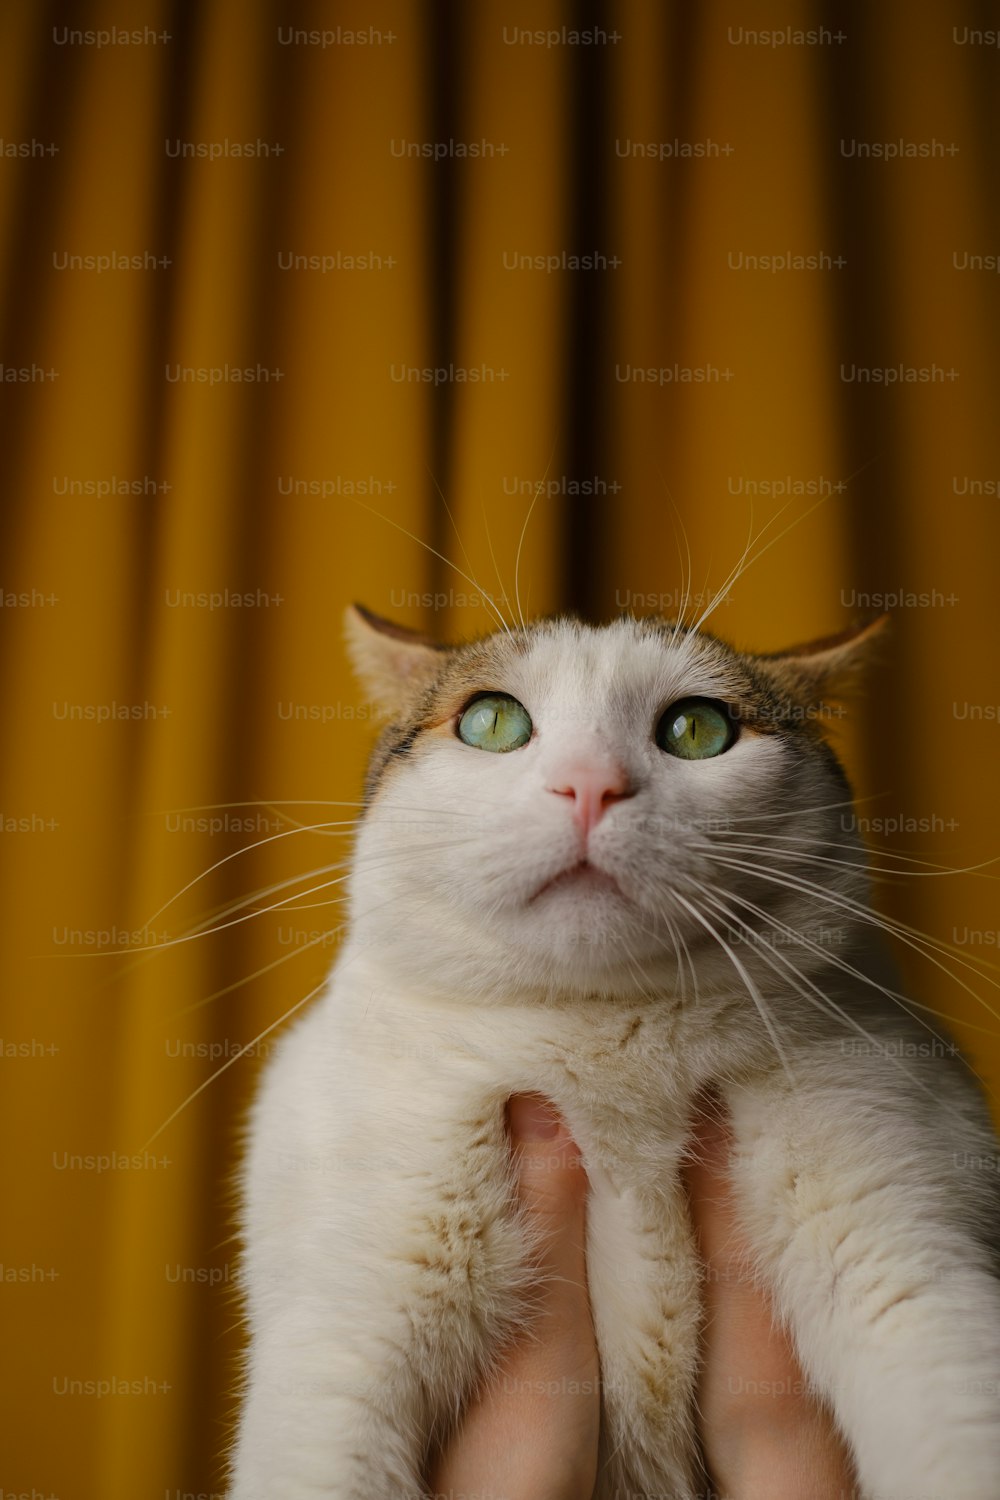 Una persona sosteniendo un gato blanco con ojos verdes